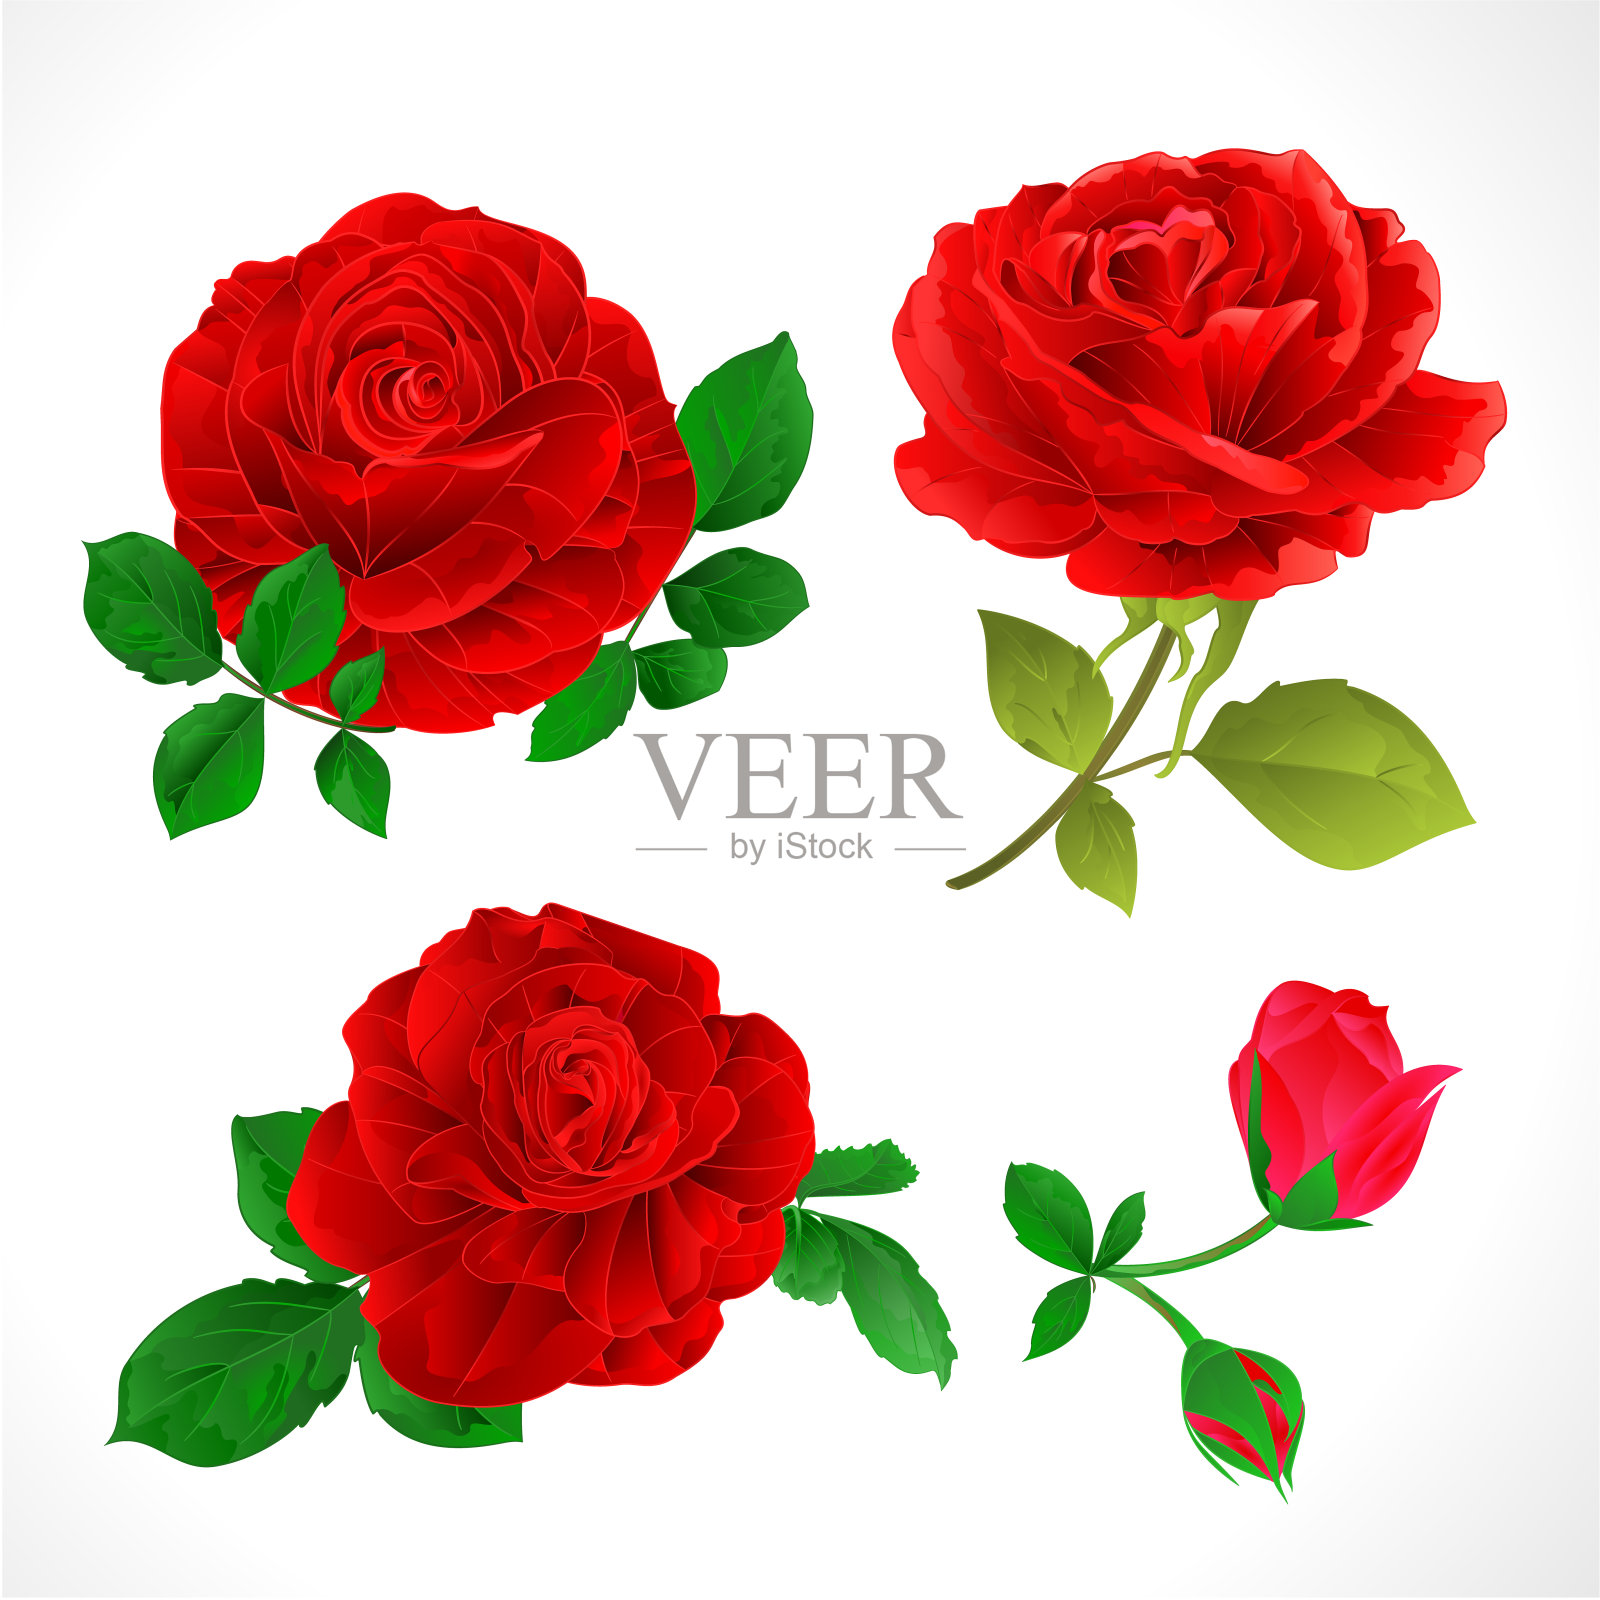 带有花蕾和叶子的红玫瑰在白色背景上设置两个矢量插图可编辑插画图片素材